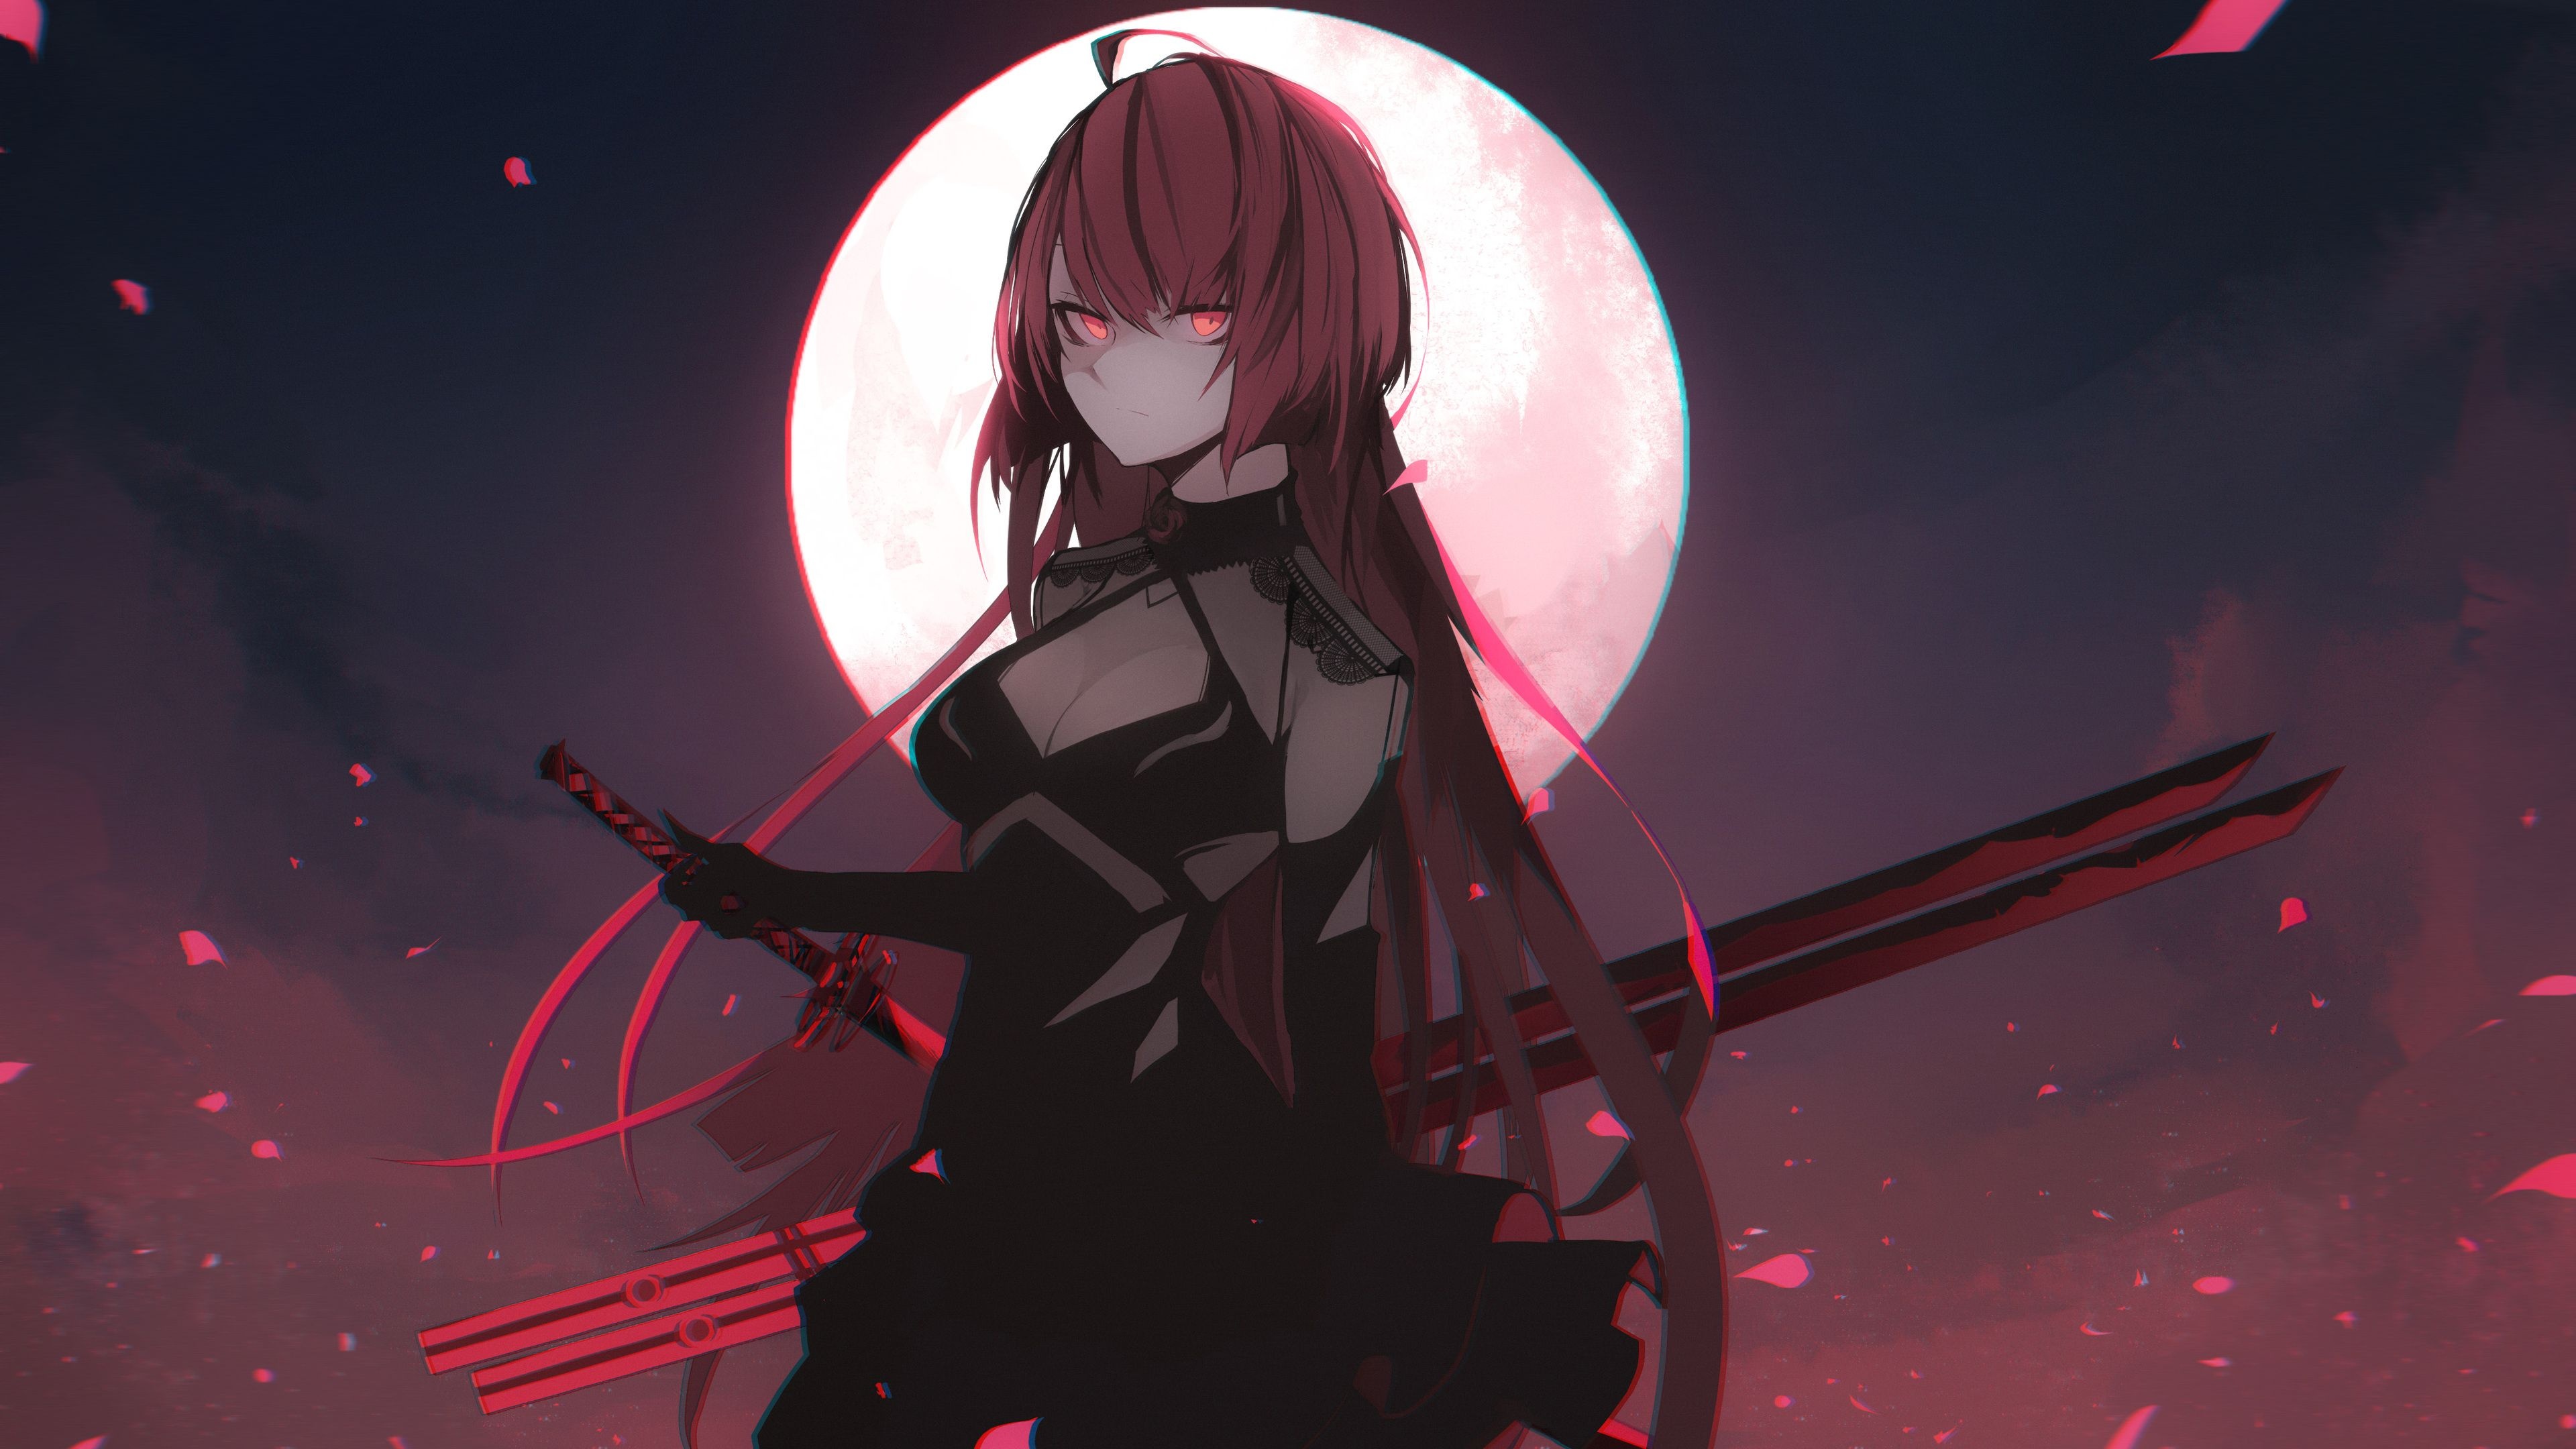 Gothic Anime: Girl with sword, Dangerous dark beauty, Elesis, Elsword, Full moon. 3840x2160 4K Background.